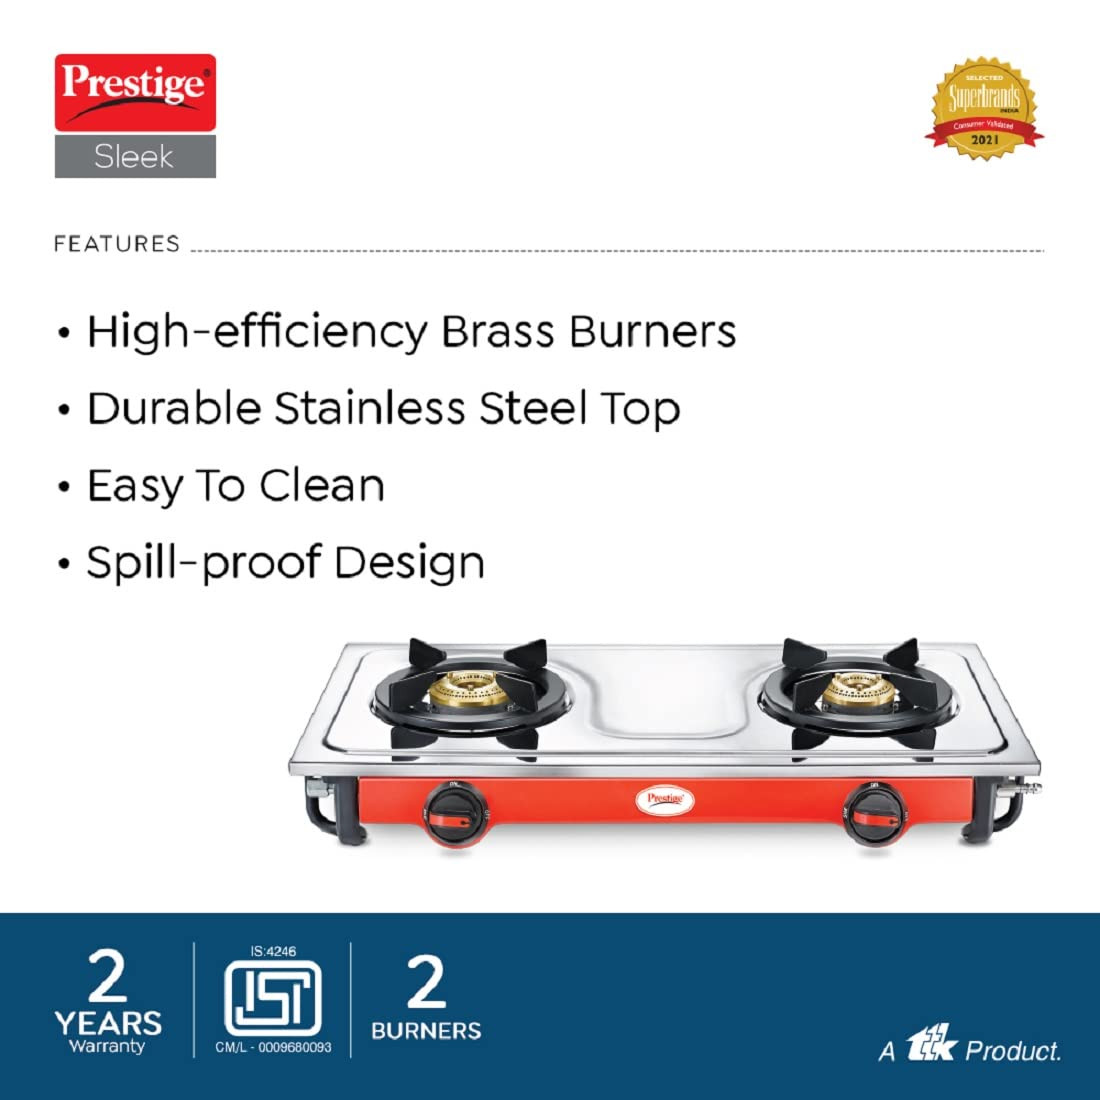 Prestige Sleek Stainless Steel LP Gas Stove 2 Burners Manual